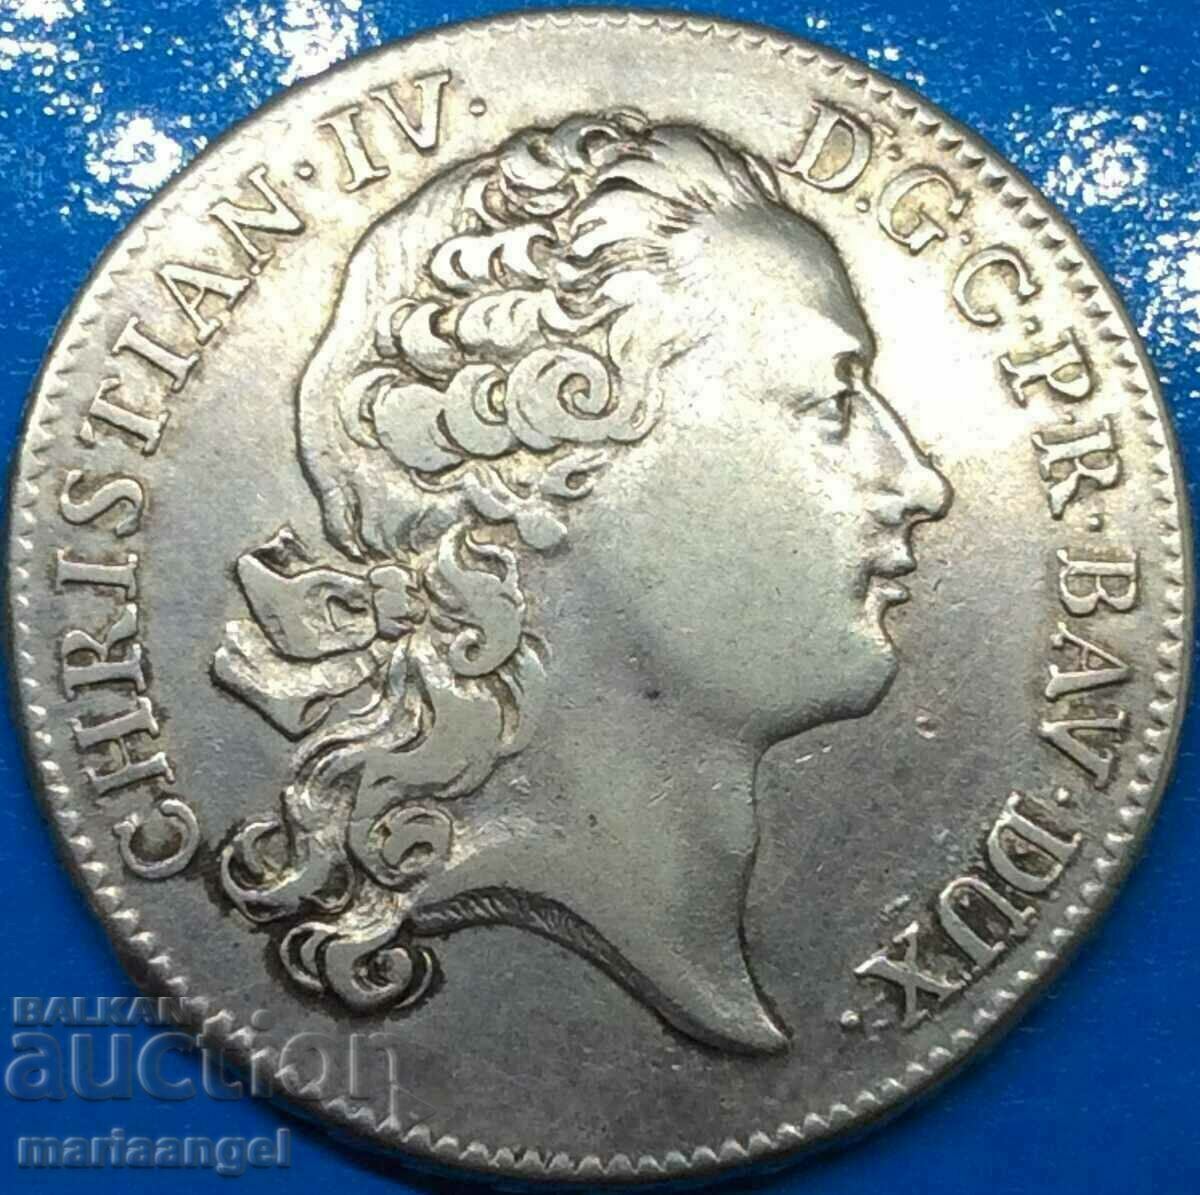 Thaler 1759 Germany Palatinate Duke Christian IV silver - rare